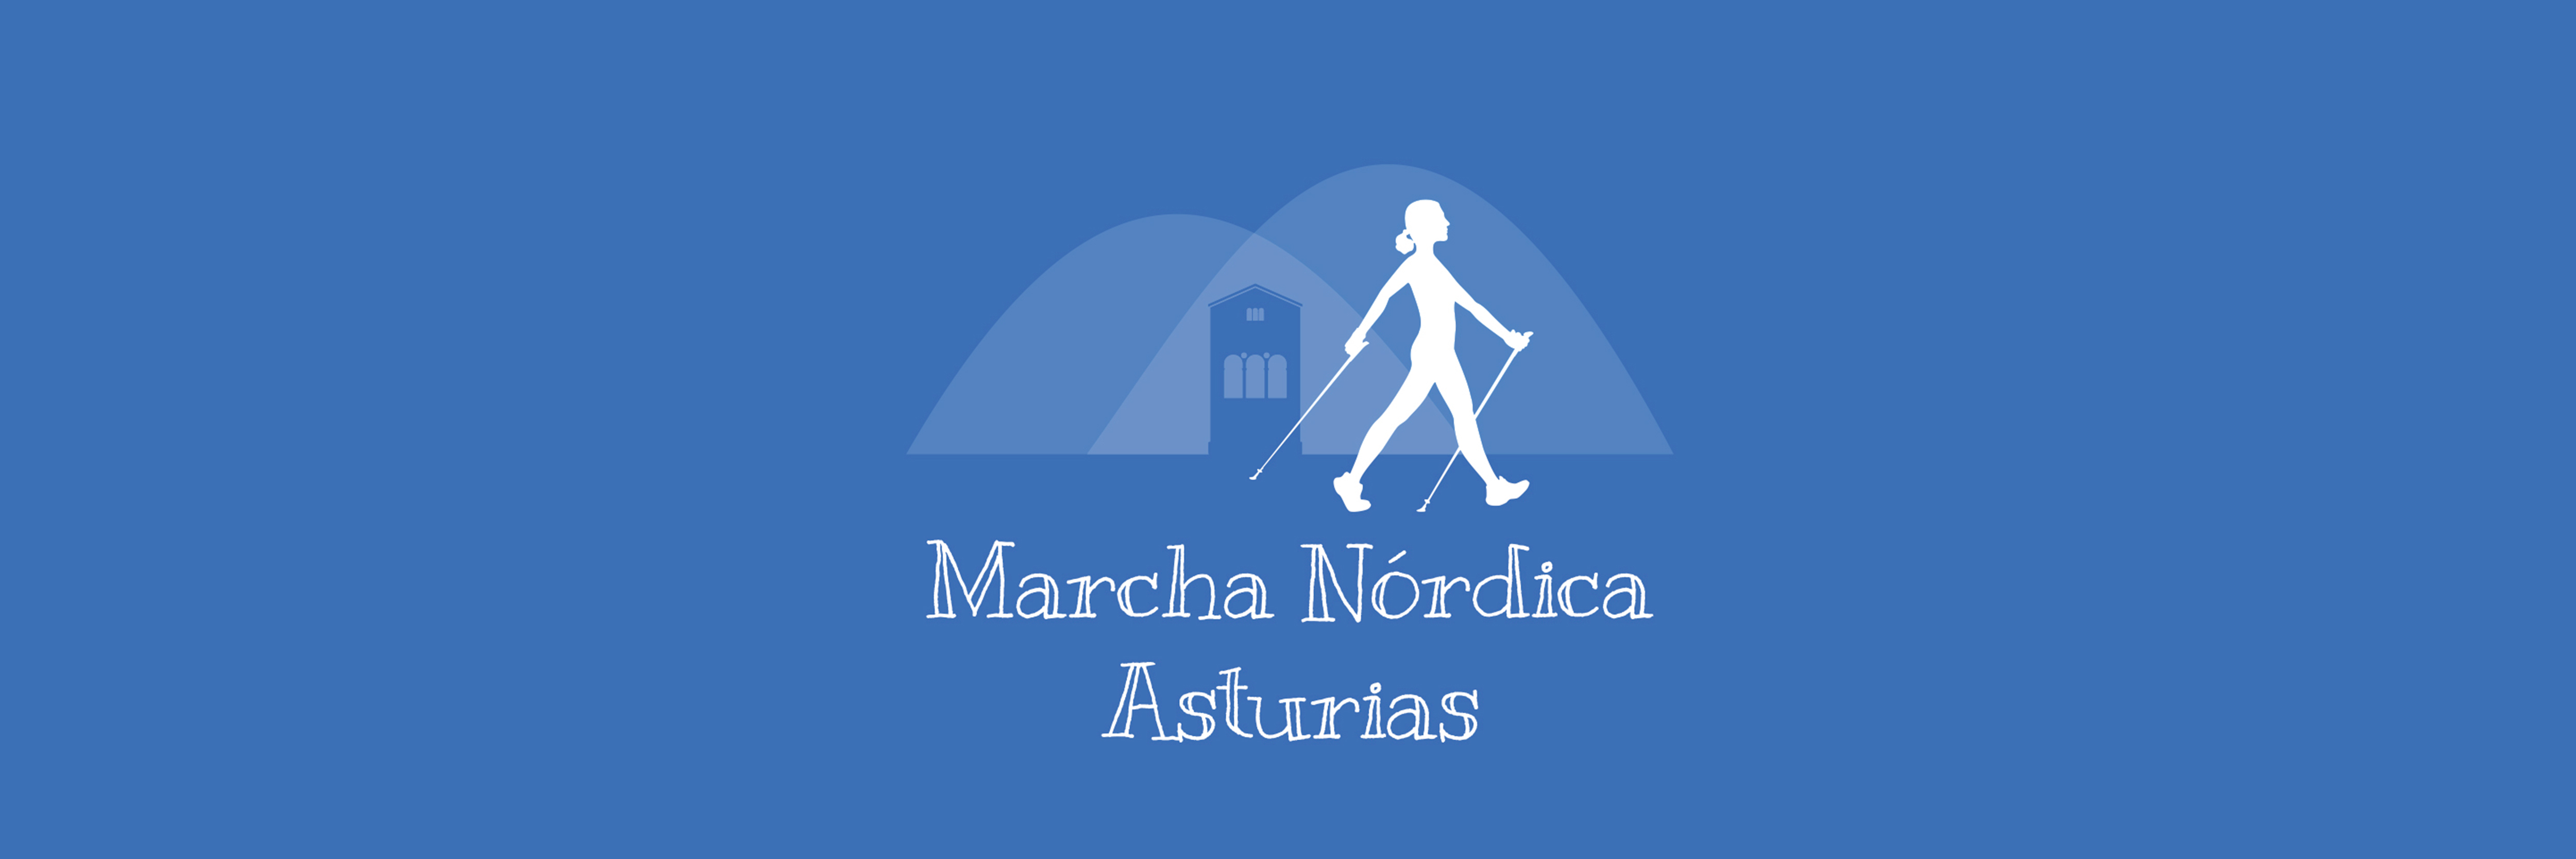 Logotipo de Marcha Nórdica Asturias